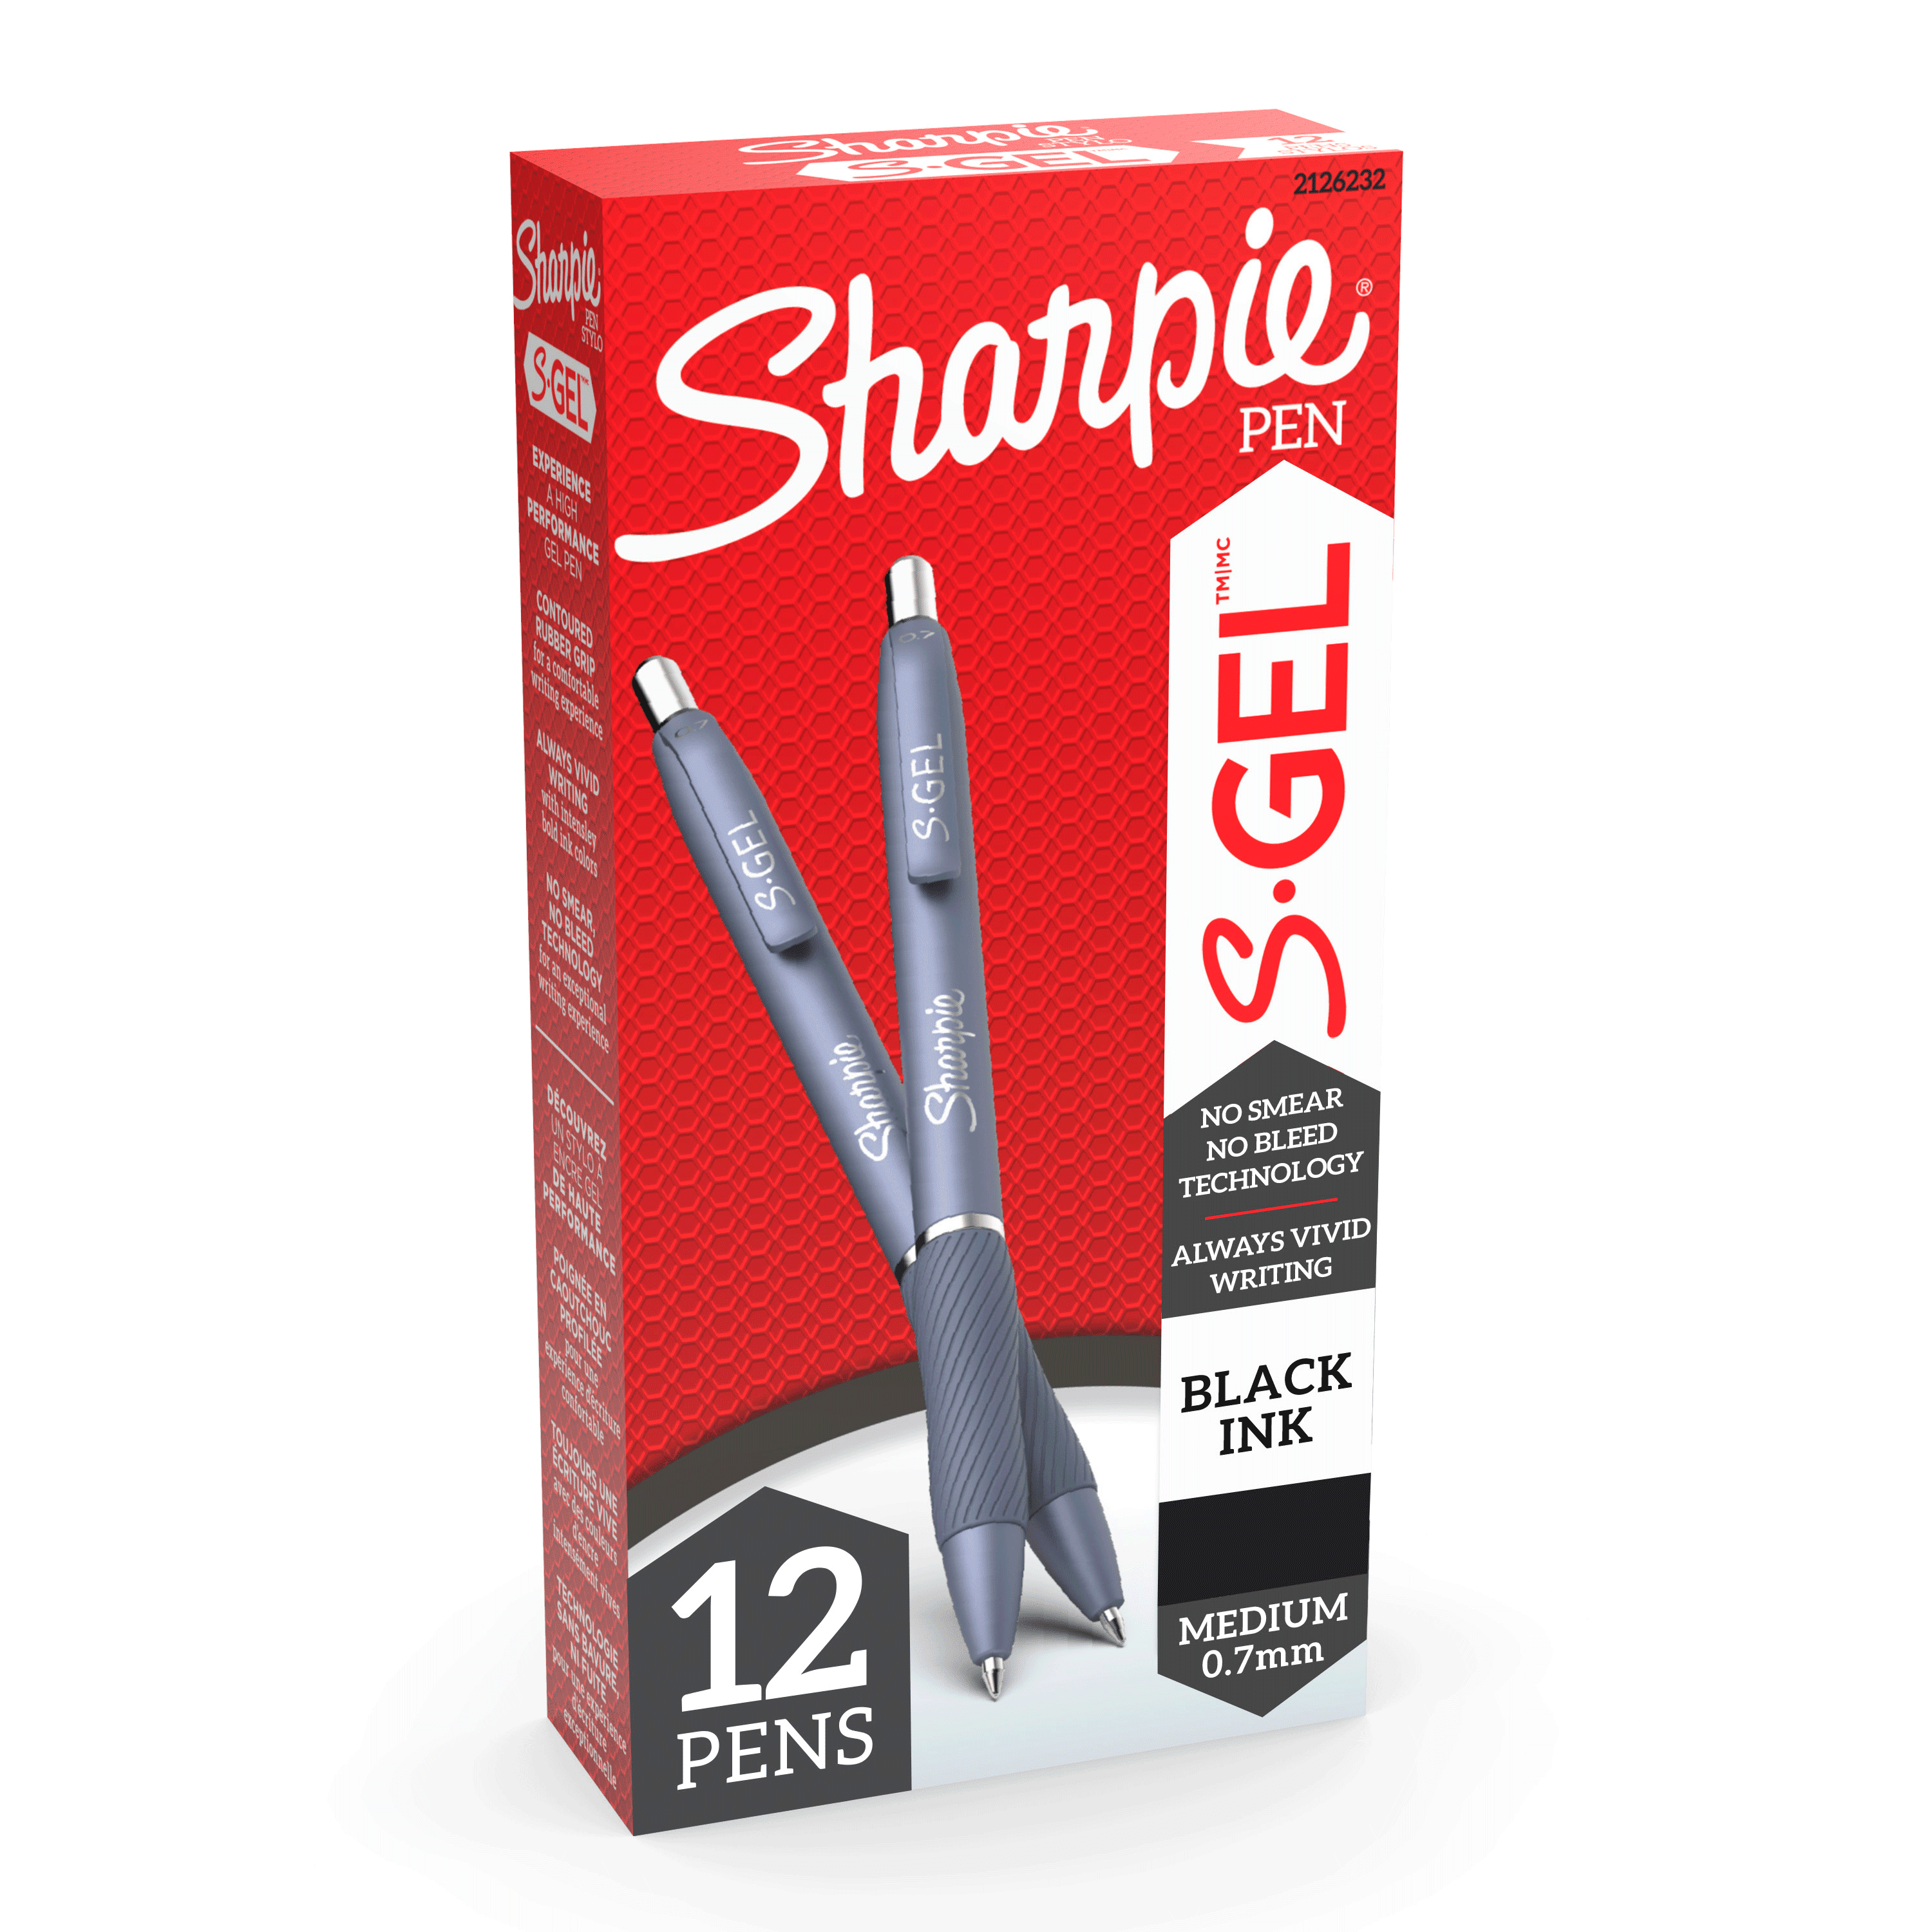 Gel Pens Medium Point Black Ink Gel Pen Sharpie S-Gel 4 Count Vivid 0.7mm